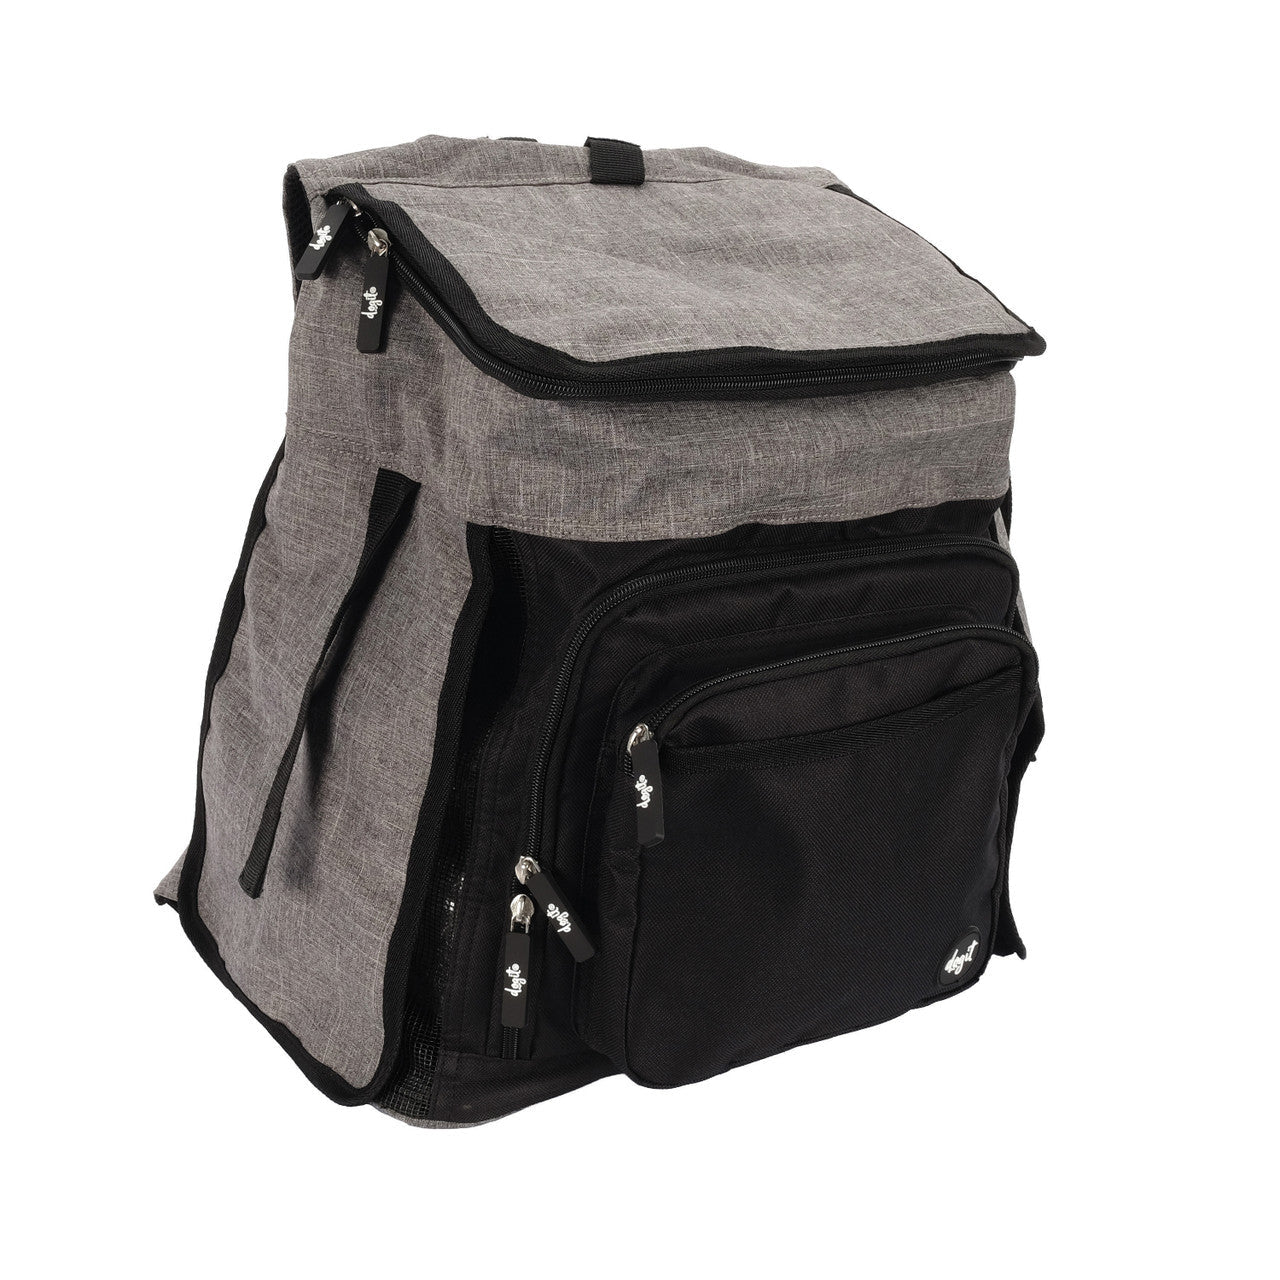 Dogit Explorer Backpack Carrier, Gray/Black 022517775646